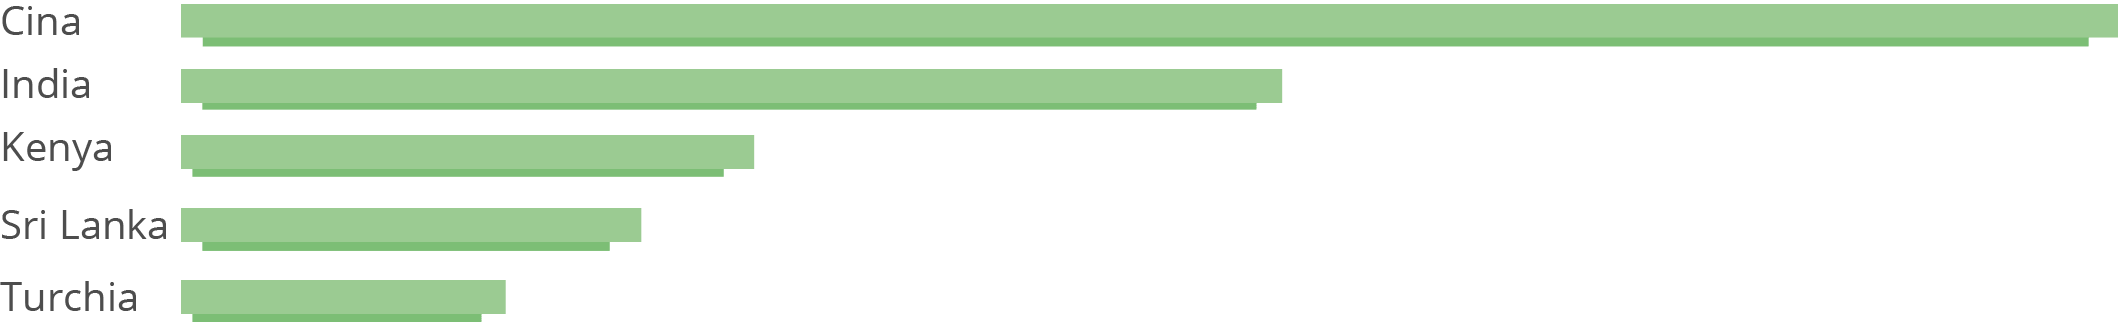 bar-chart